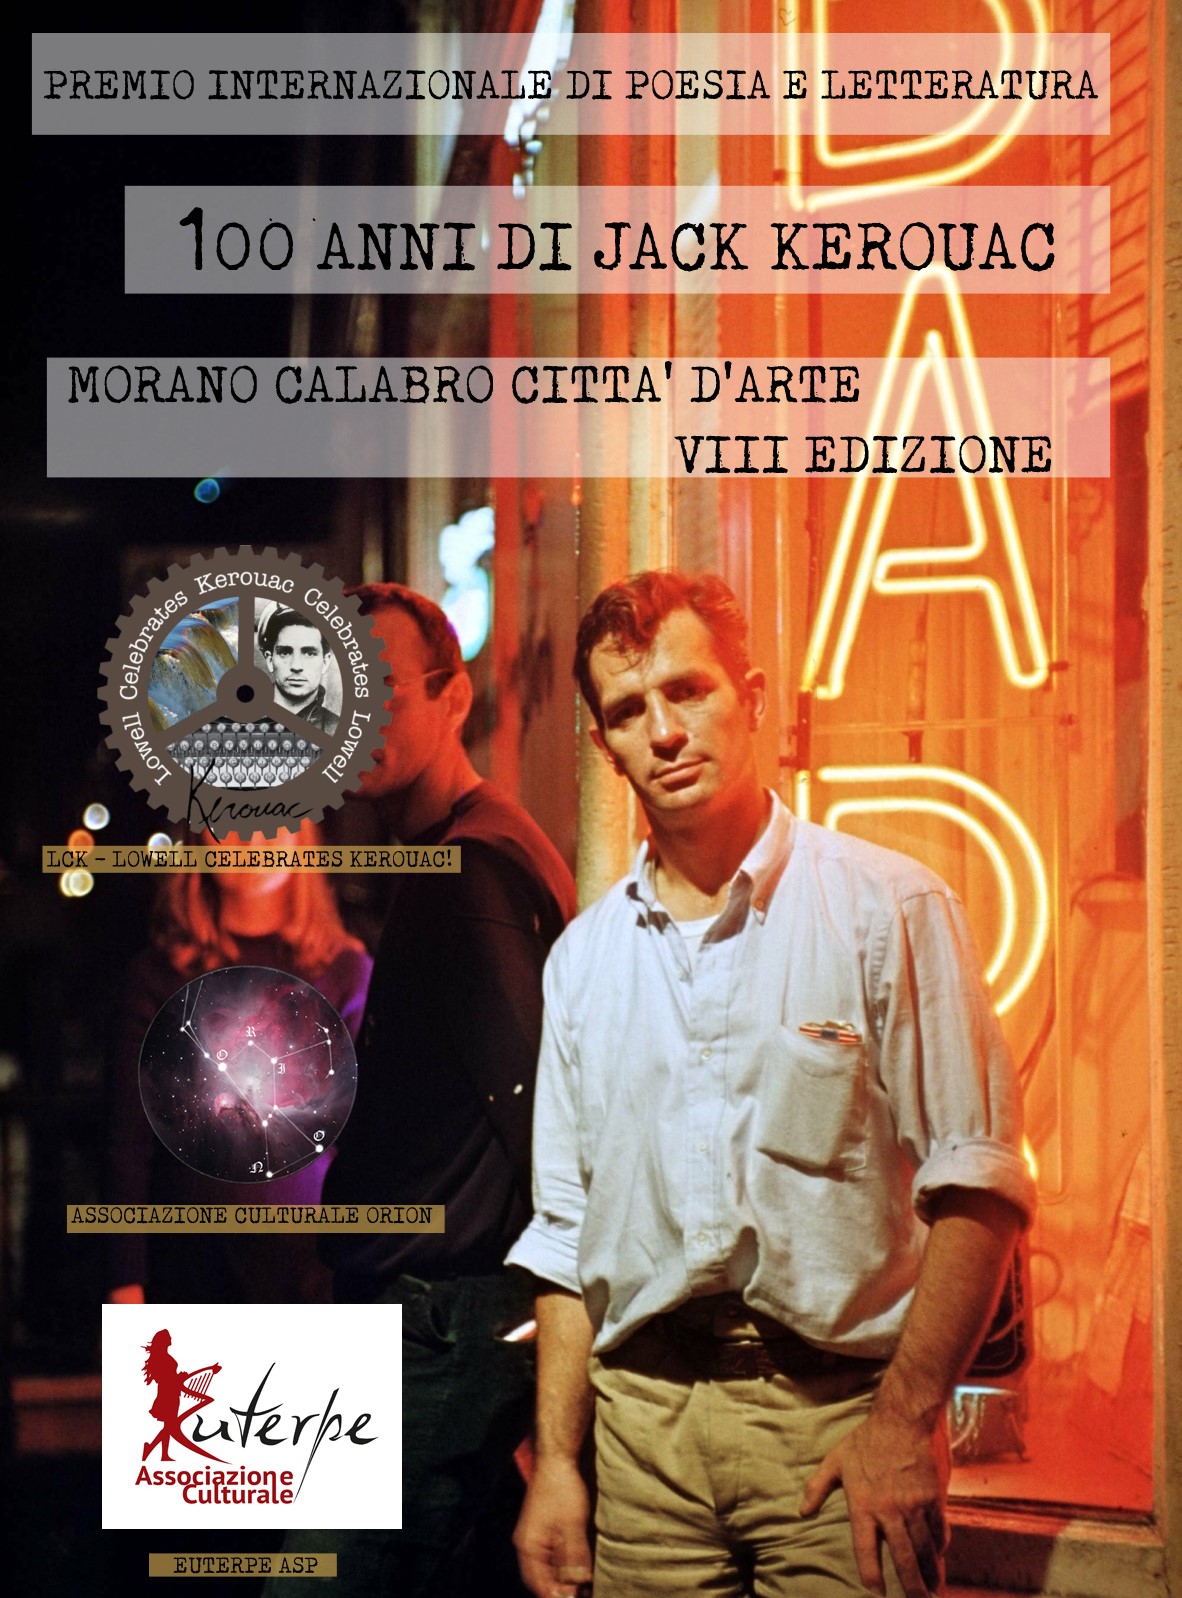 RISULTATI Premio Internazionale di Poesia e Letteratura "100 anni di Jack Kerouac" – Morano Calabro Città d'Arte VIII Edizione